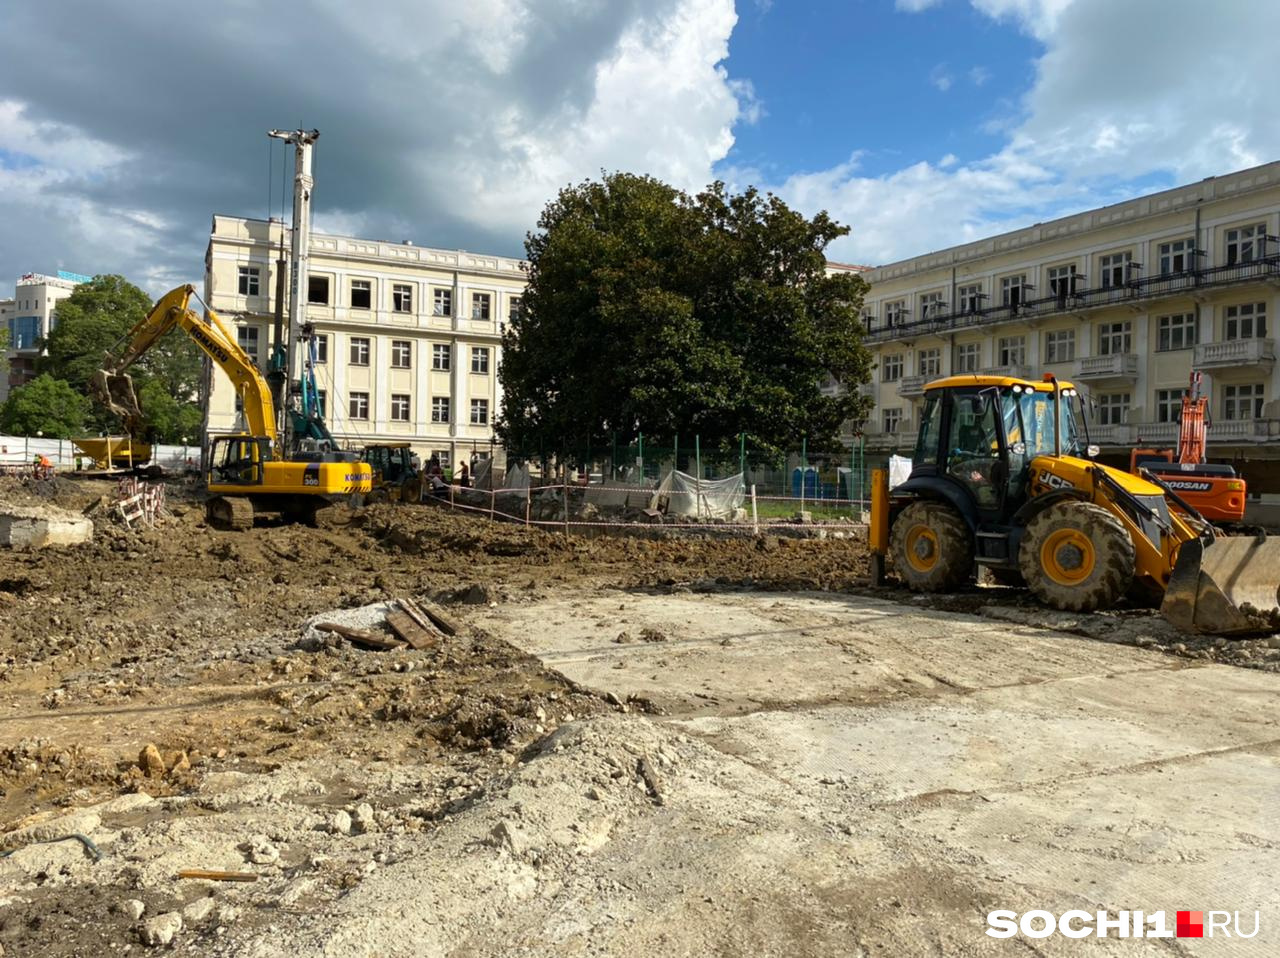 Группа ЛСР уже реализует в Сочи проект по реконструкции гостиницы «Приморская», эта же компания начала реставрацию санатория «Волна»